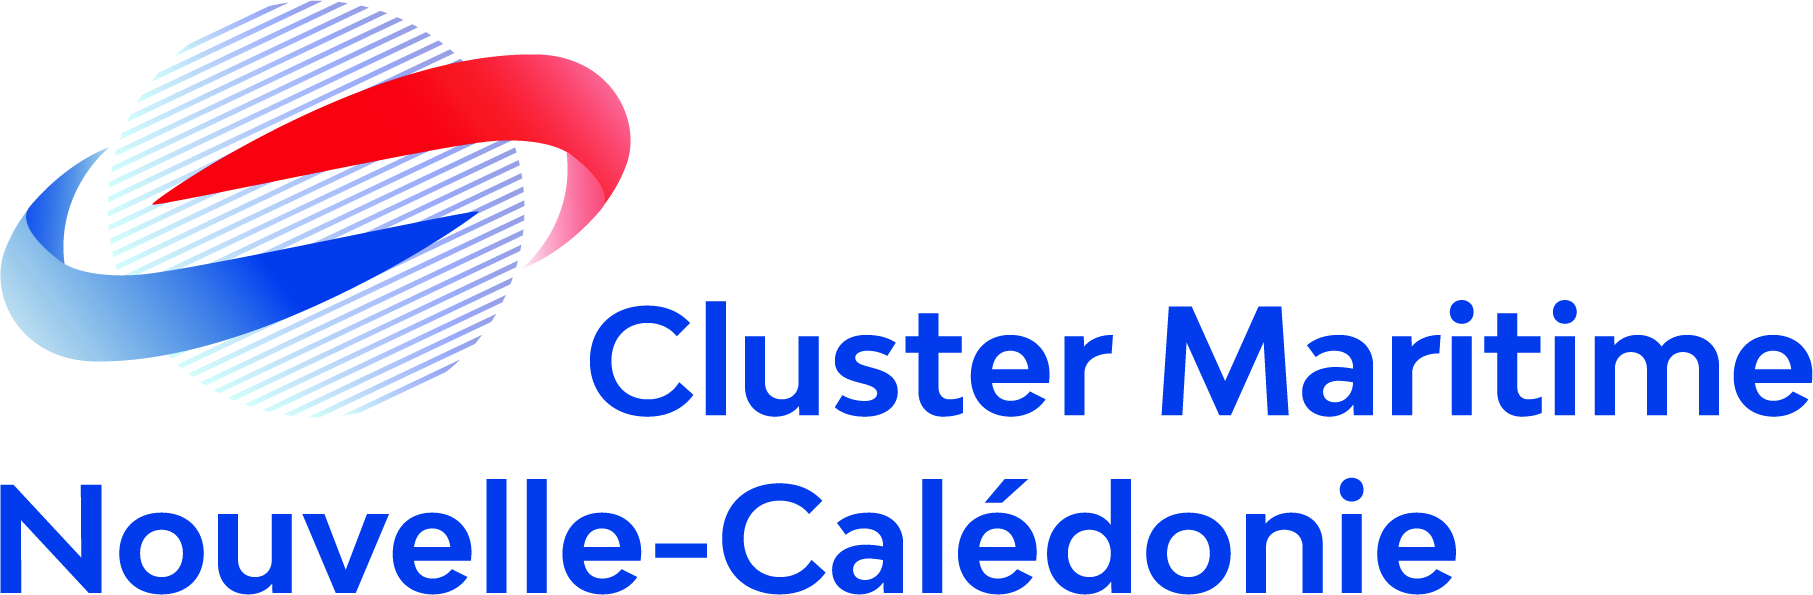 Cluster Maritime Nouvelle-Calédonie